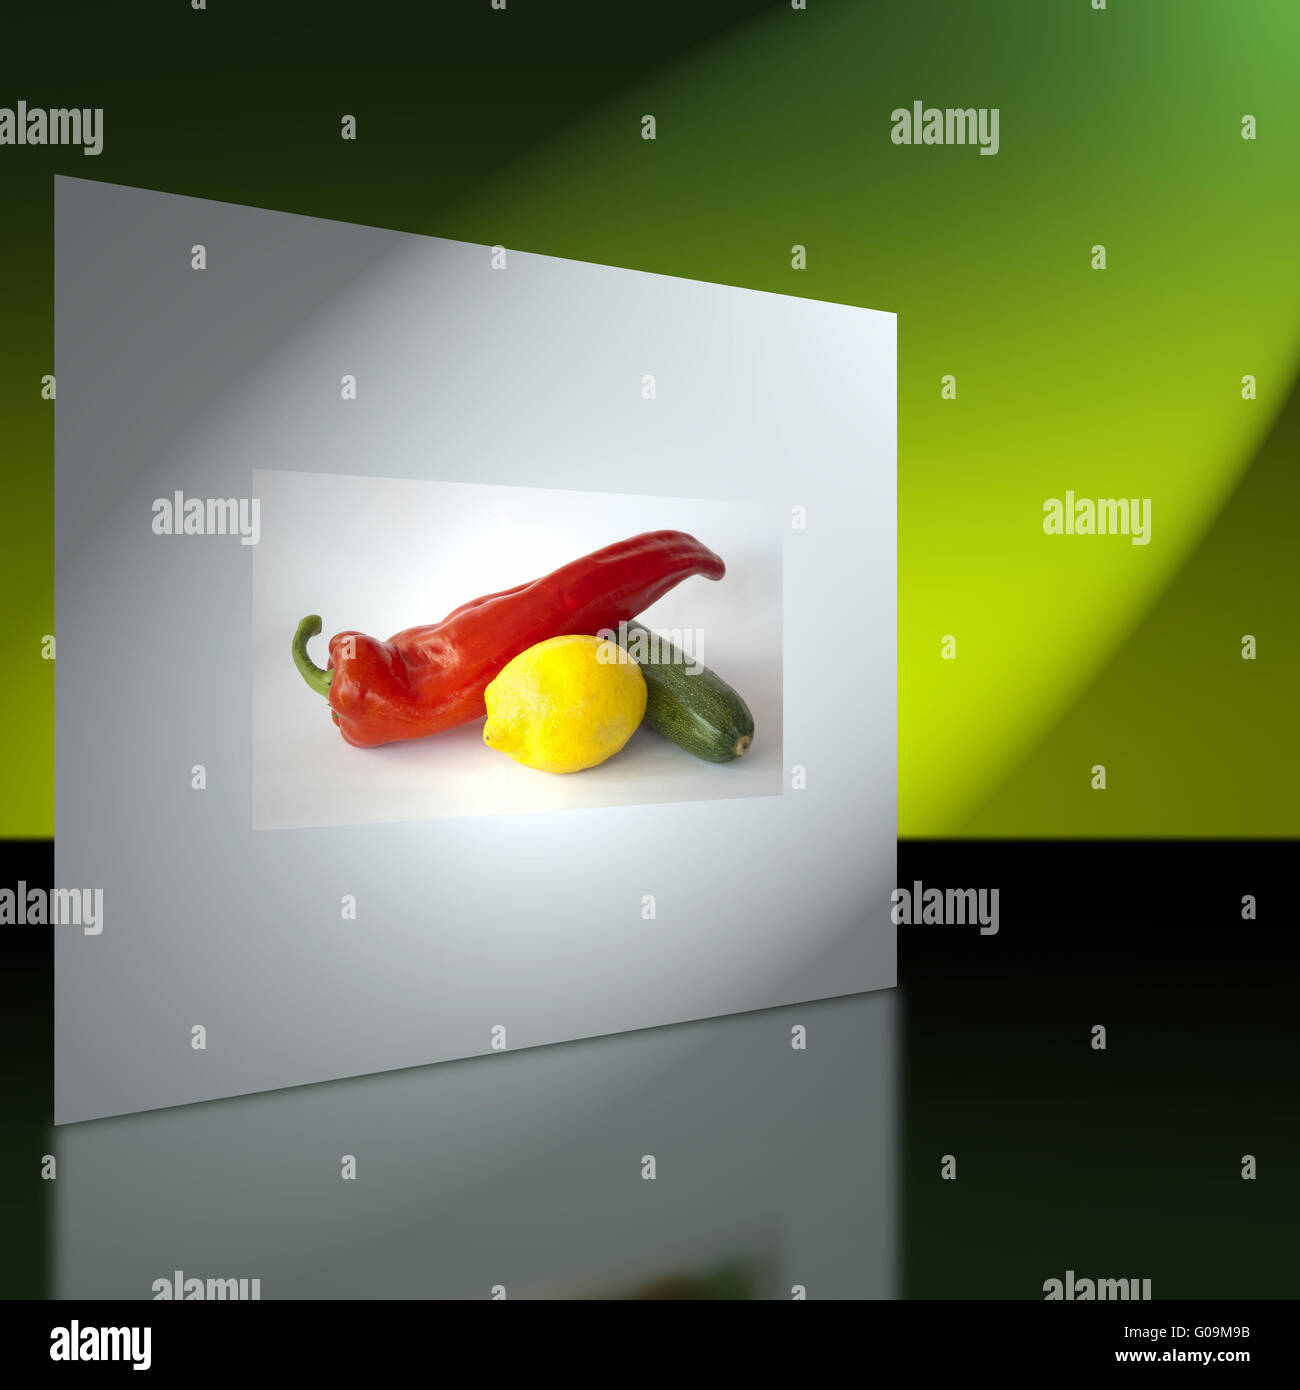 Wand mit Bild von Paprika, Zucchini und Zitrone Stockfoto